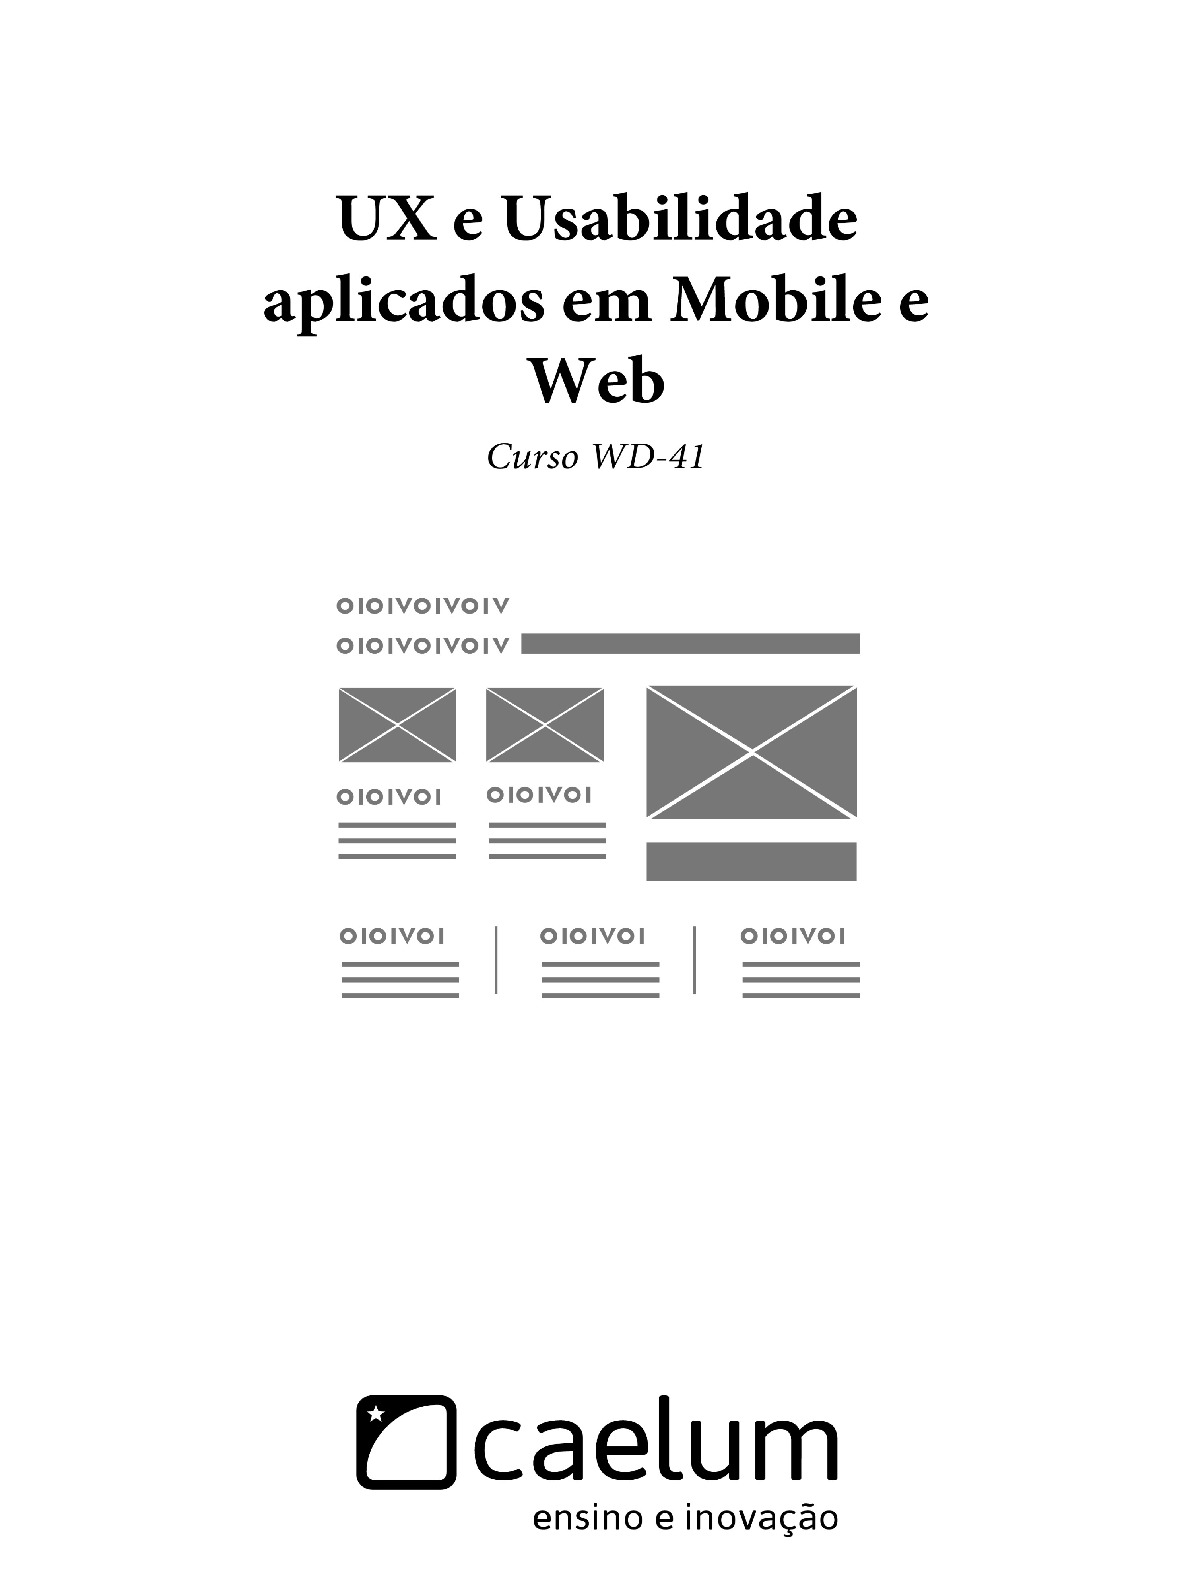 UX e Usabilidade aplicados em Mobile e Web – Caelum, Curso WD-41